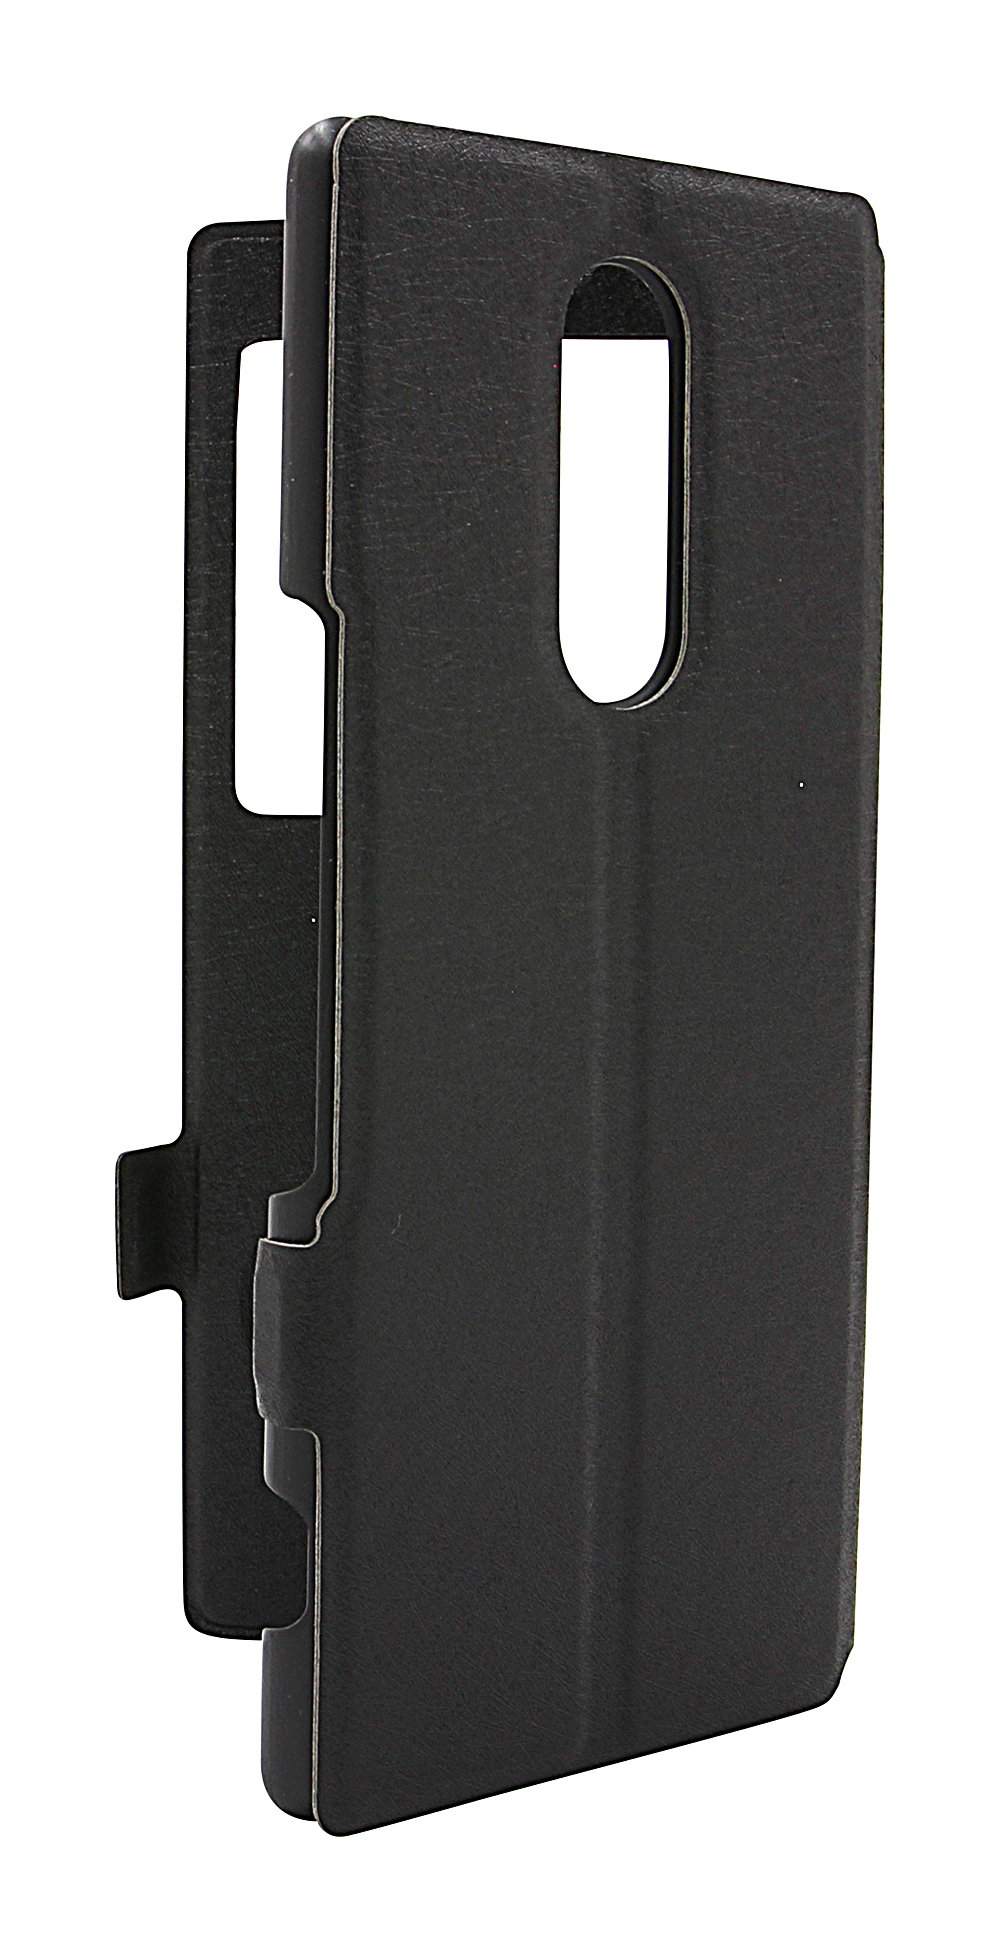 Flipcase Sony Xperia 1 (J9110)